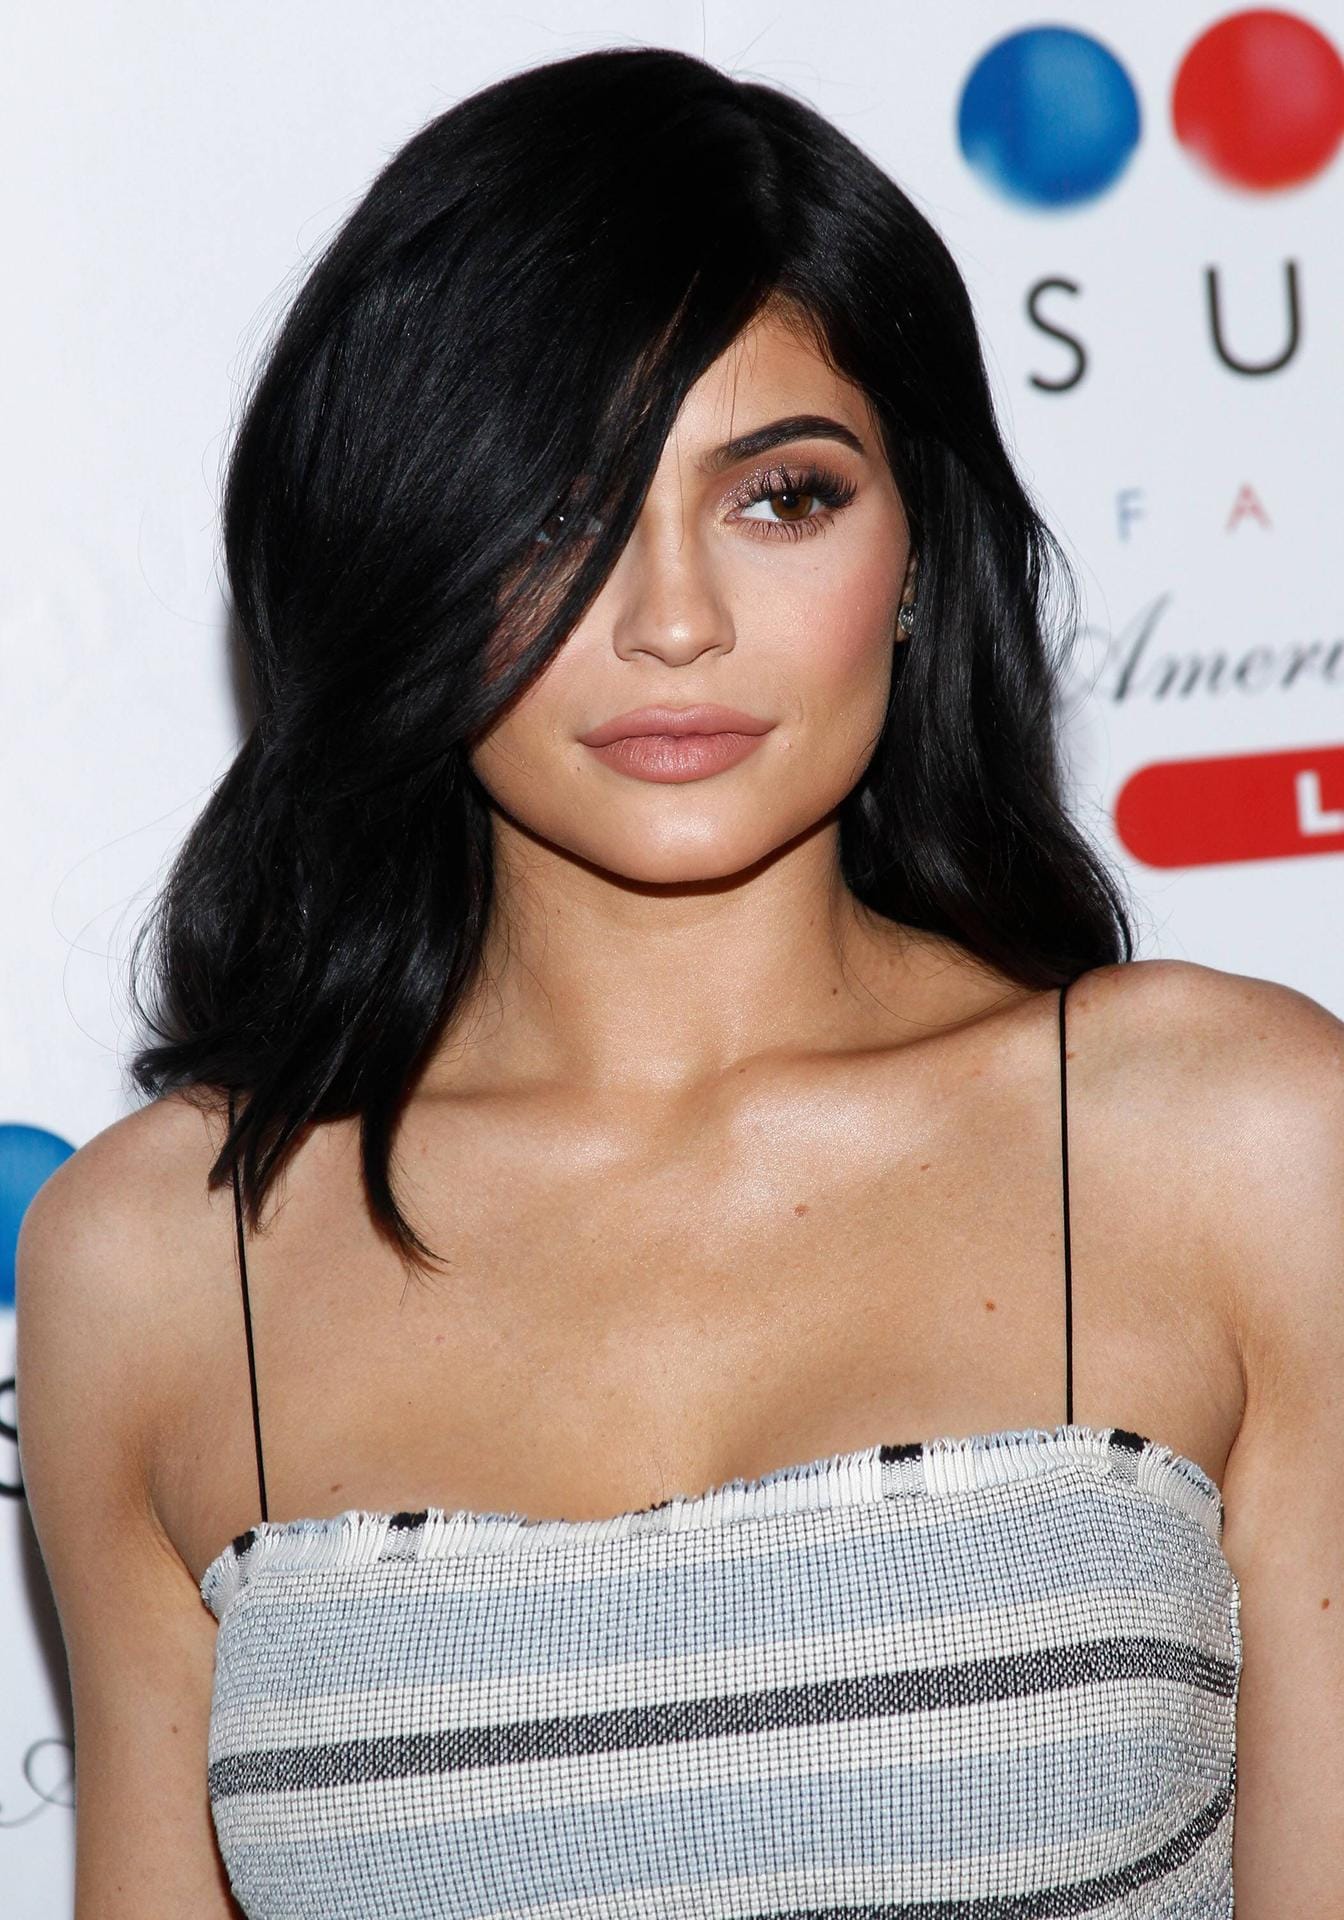 3. Platz: Reality-Star und Unternehmerin Kylie Jenner ist angehende Milliardärin. In den vergangenen 12 Monaten habe die 20-Jährige 166,5 Millionen Dollar (rund 142 Millionen Euro) eingenommen.